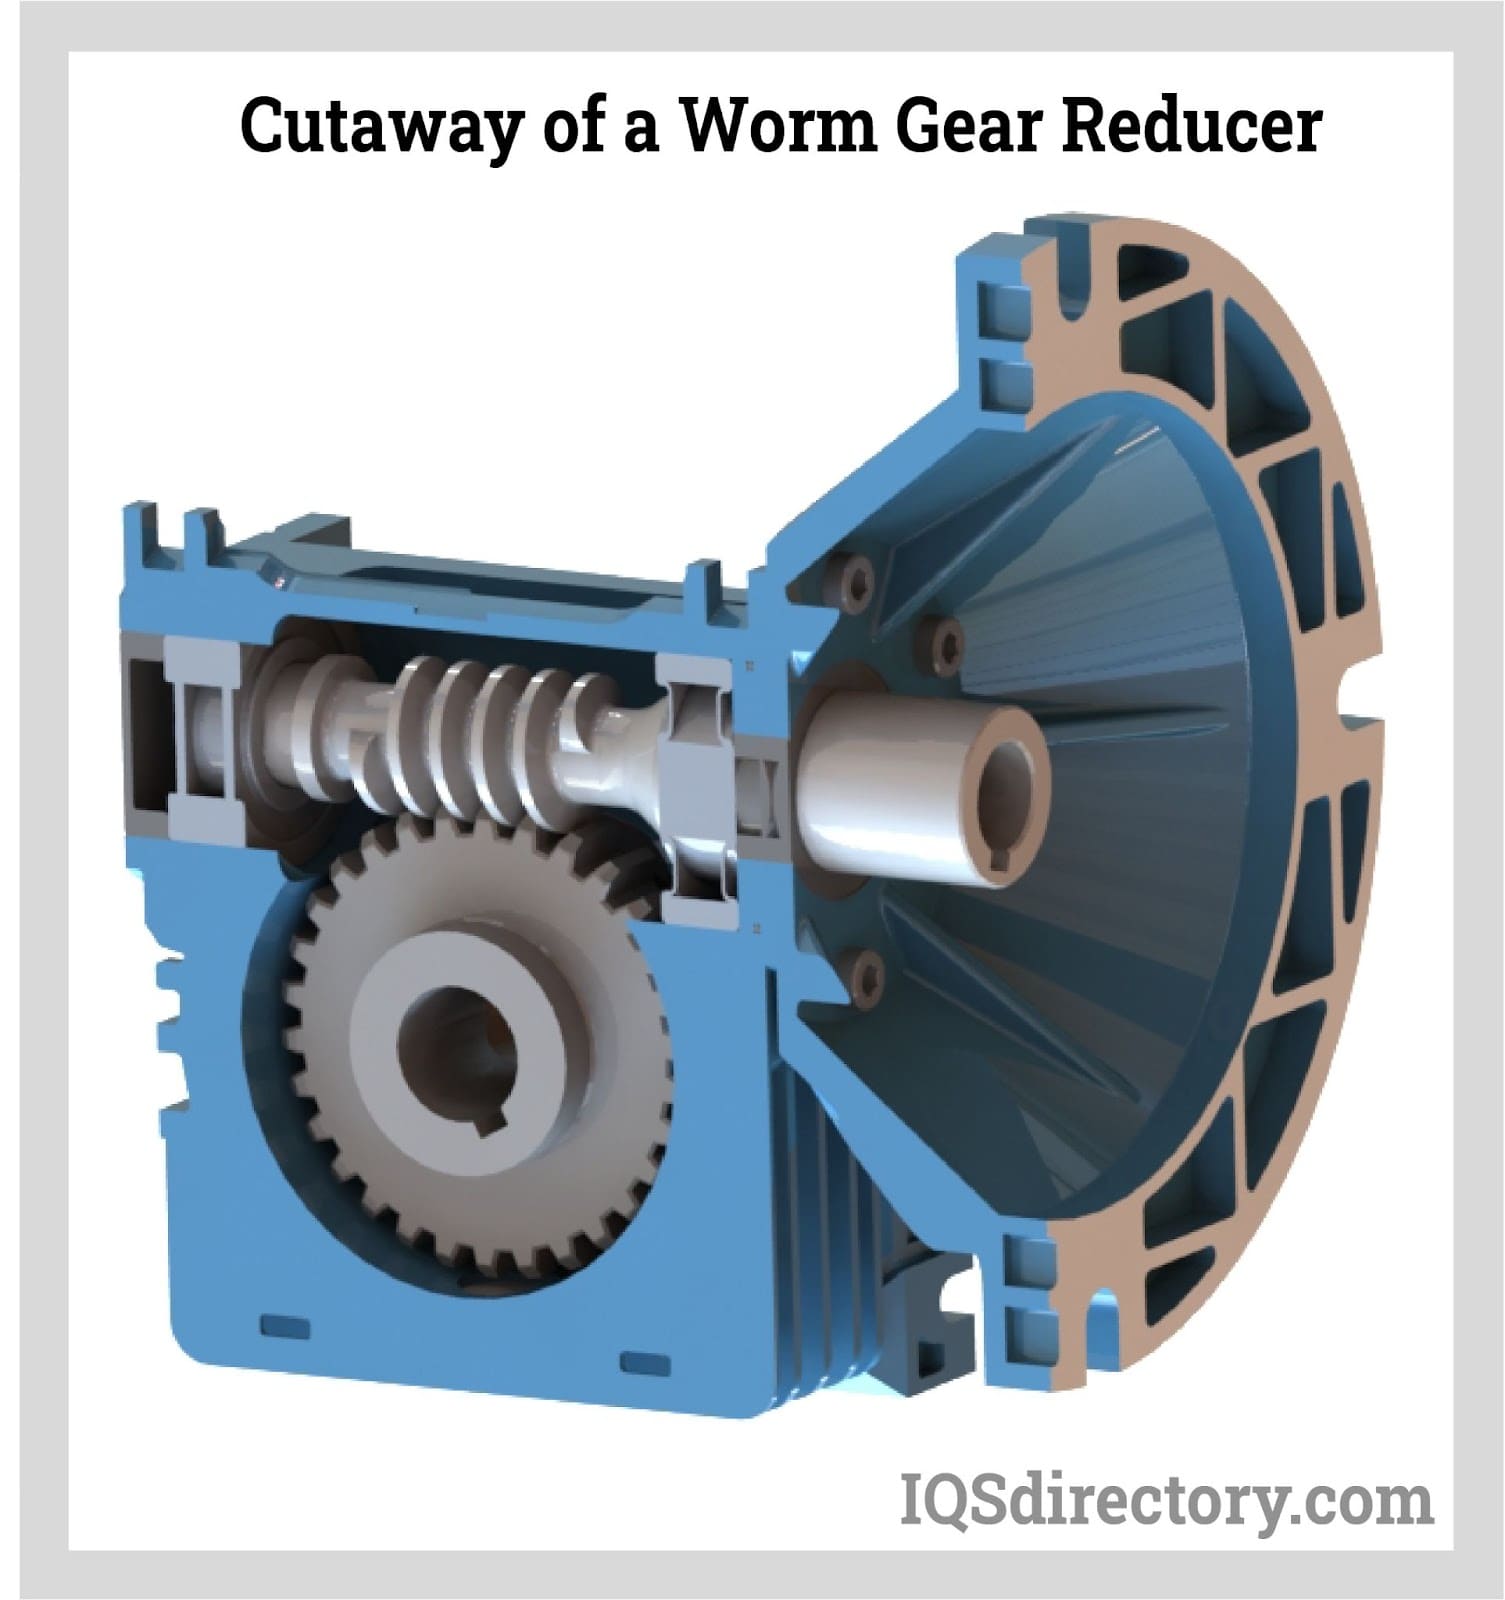 Cutaway of a Worm Gear Reducer